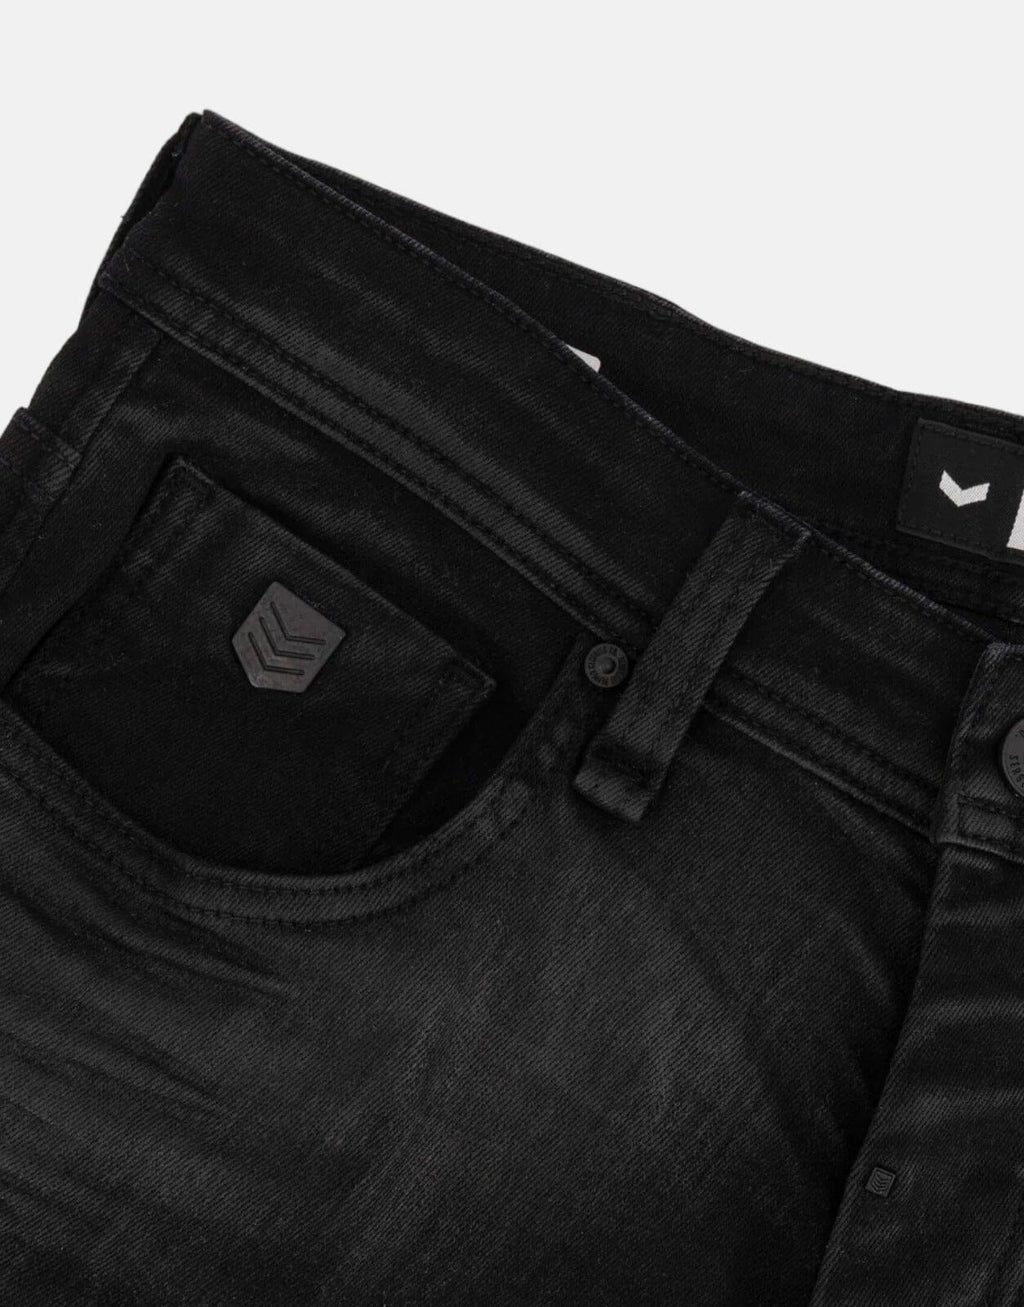 SPCC Rhynco Black Jeans – Subwear